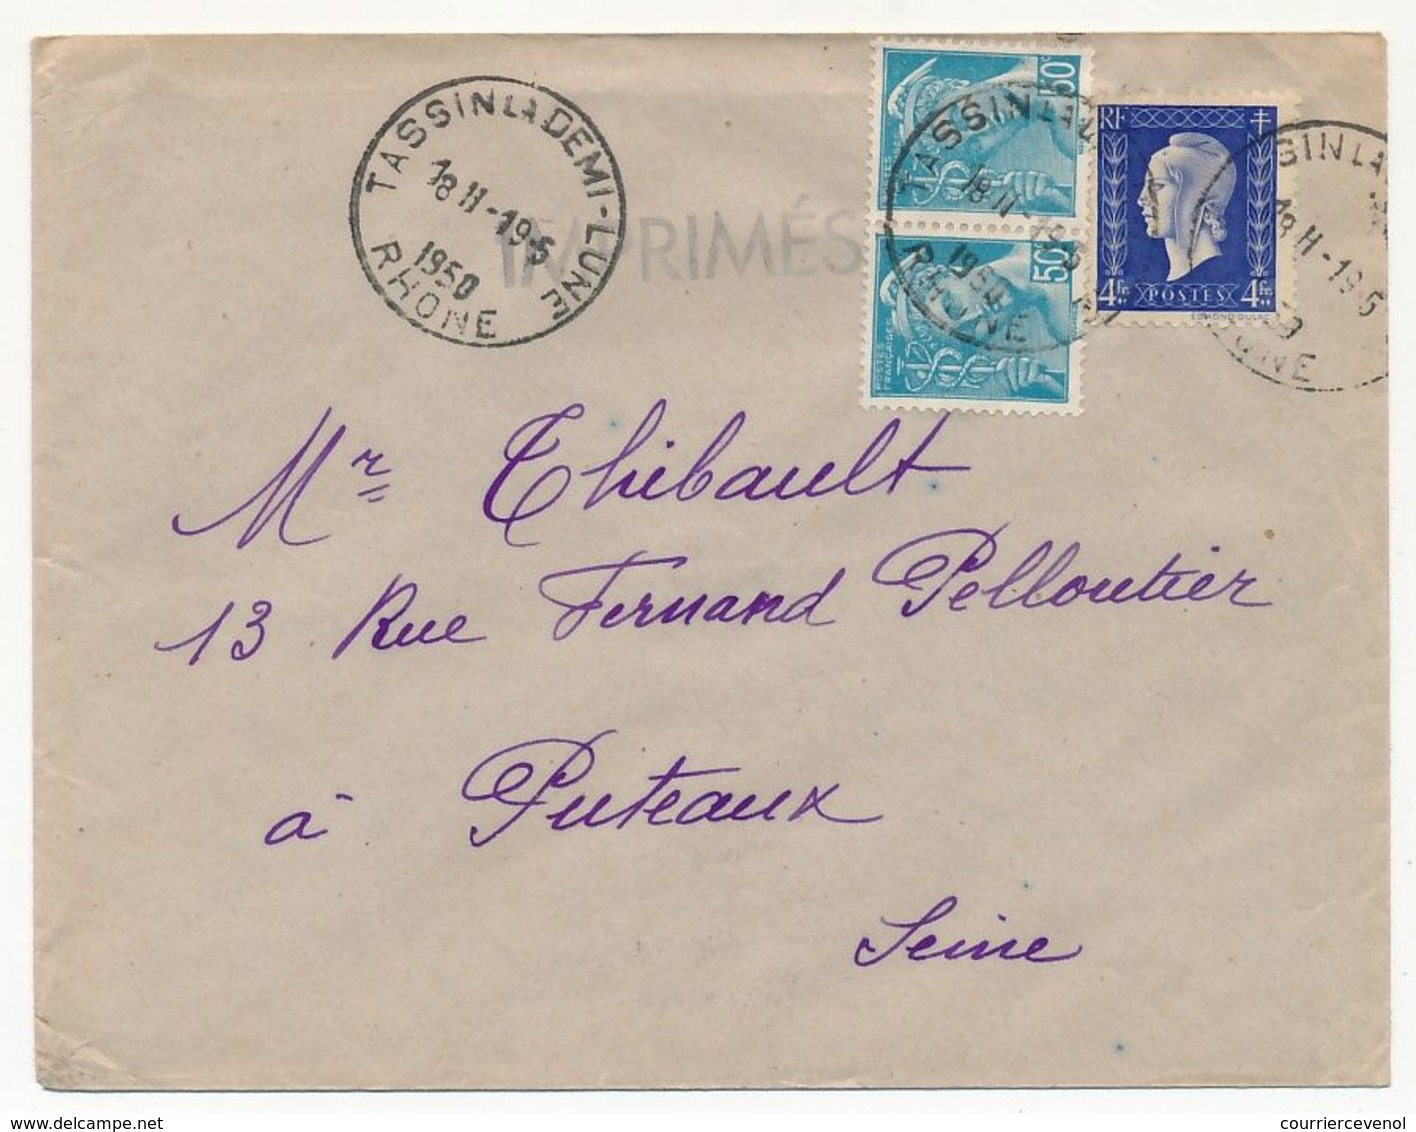 FRANCE - Enveloppe Affr. Composé 4F Dulac + 2x50c Mercure - Tassin La Demi-Lune (Rhône) - 1950 - 1944-45 Maríanne De Dulac